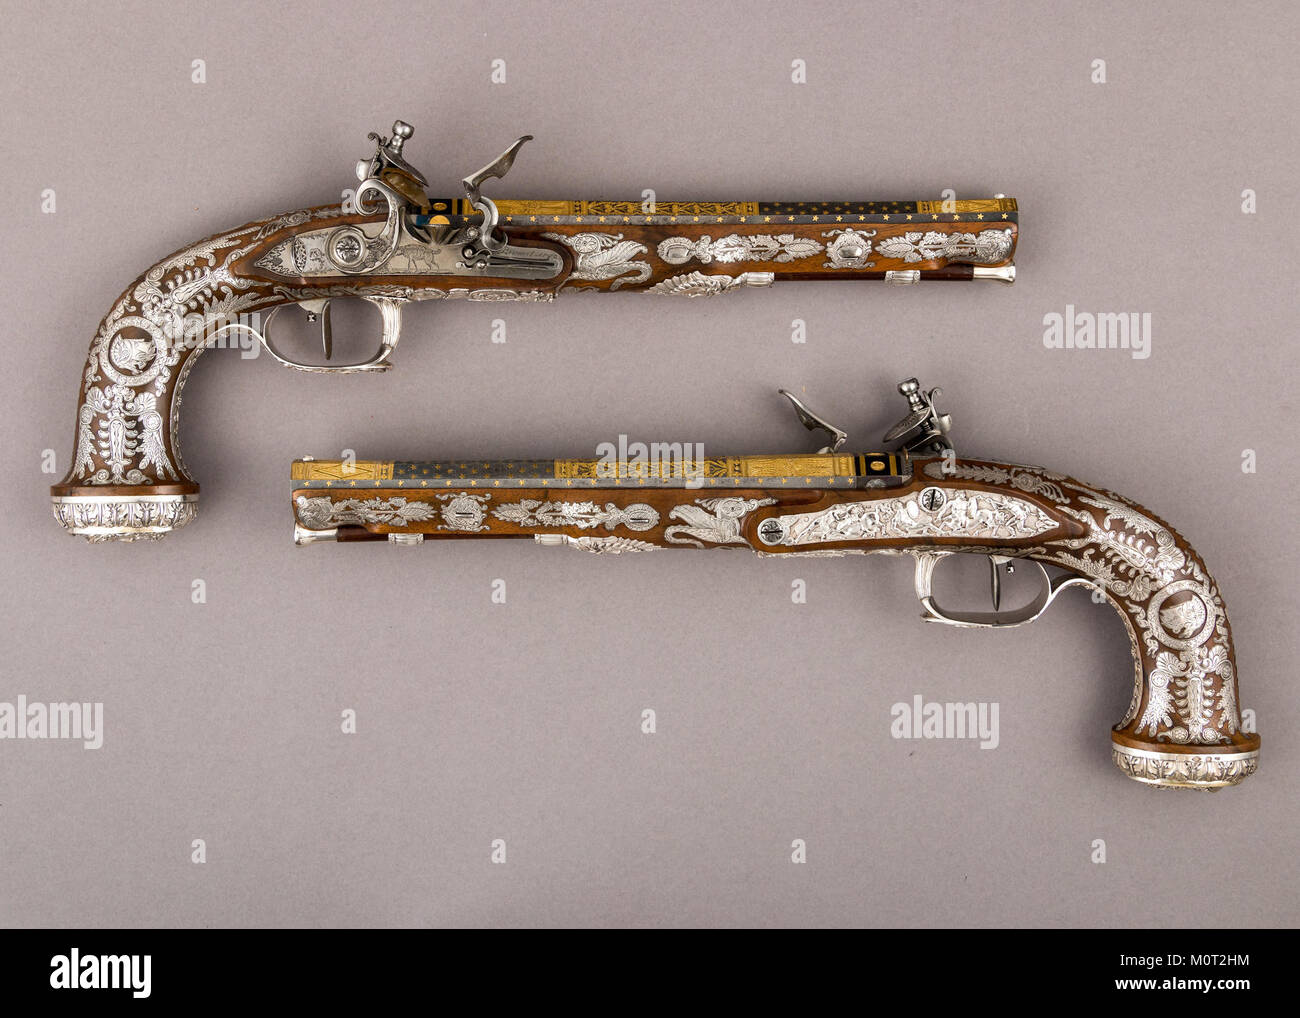 Incassato Coppia di Flintlock Pistols con accessori incontrato LC-28 196 1a b 2a l-018 Foto Stock